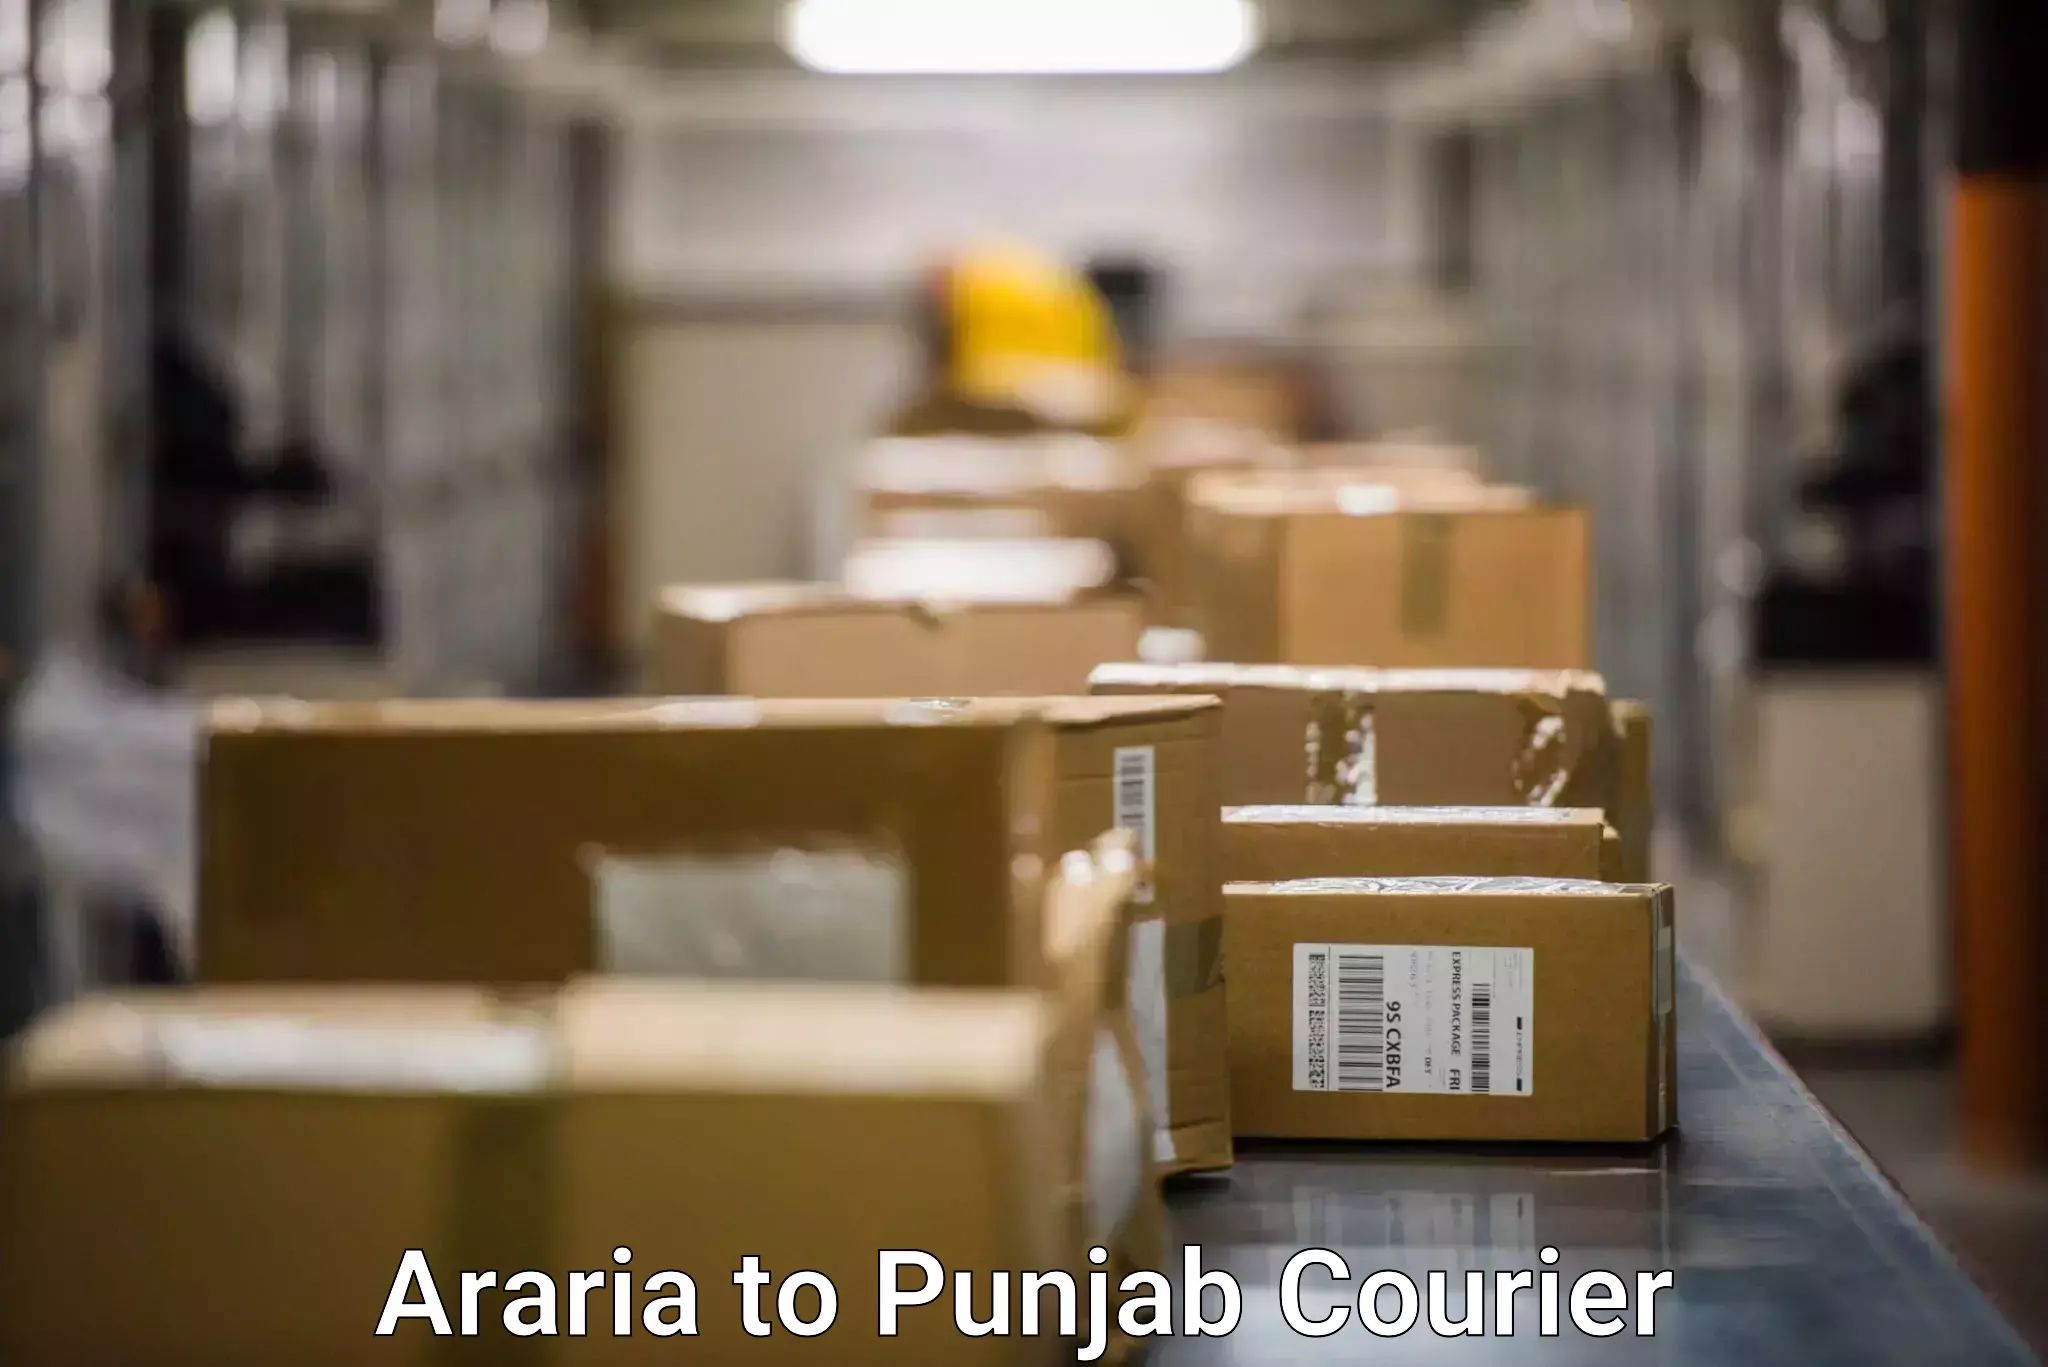 Courier service comparison Araria to Barnala